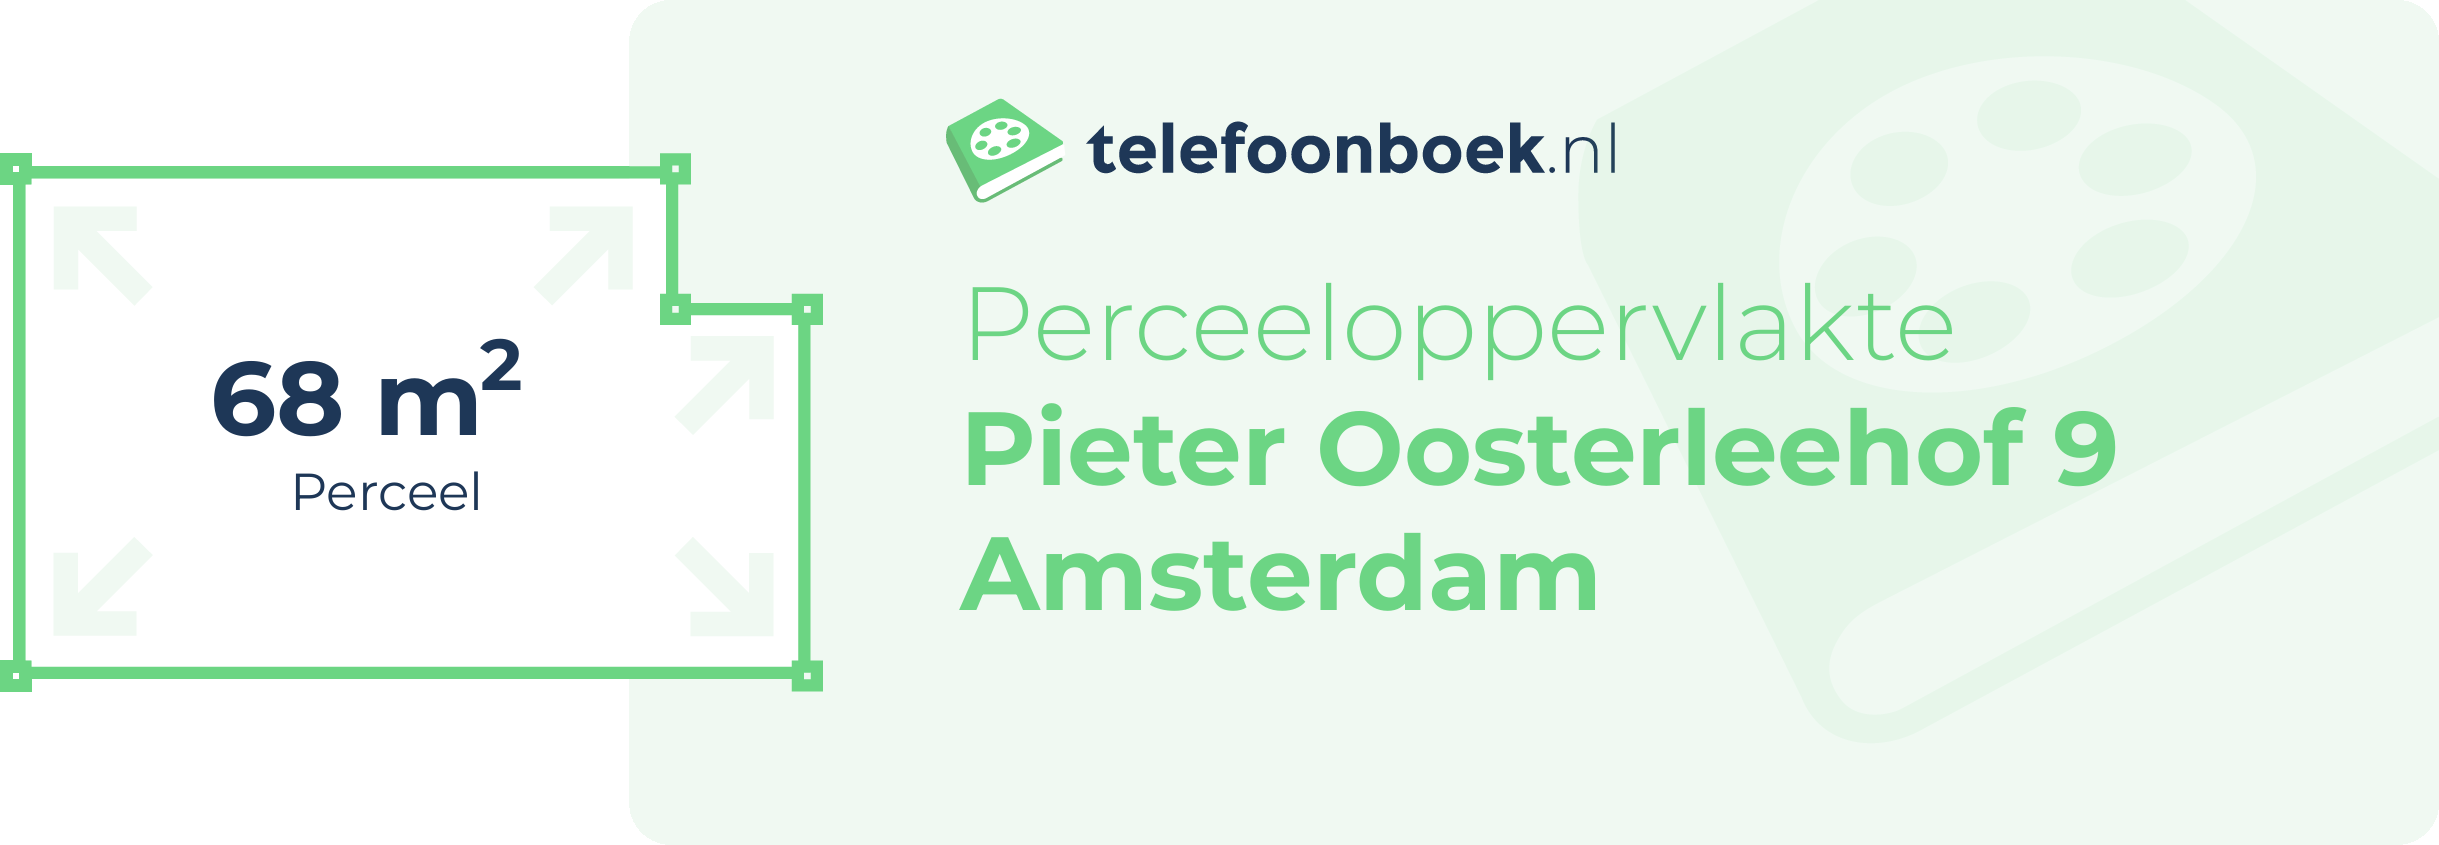 Perceeloppervlakte Pieter Oosterleehof 9 Amsterdam